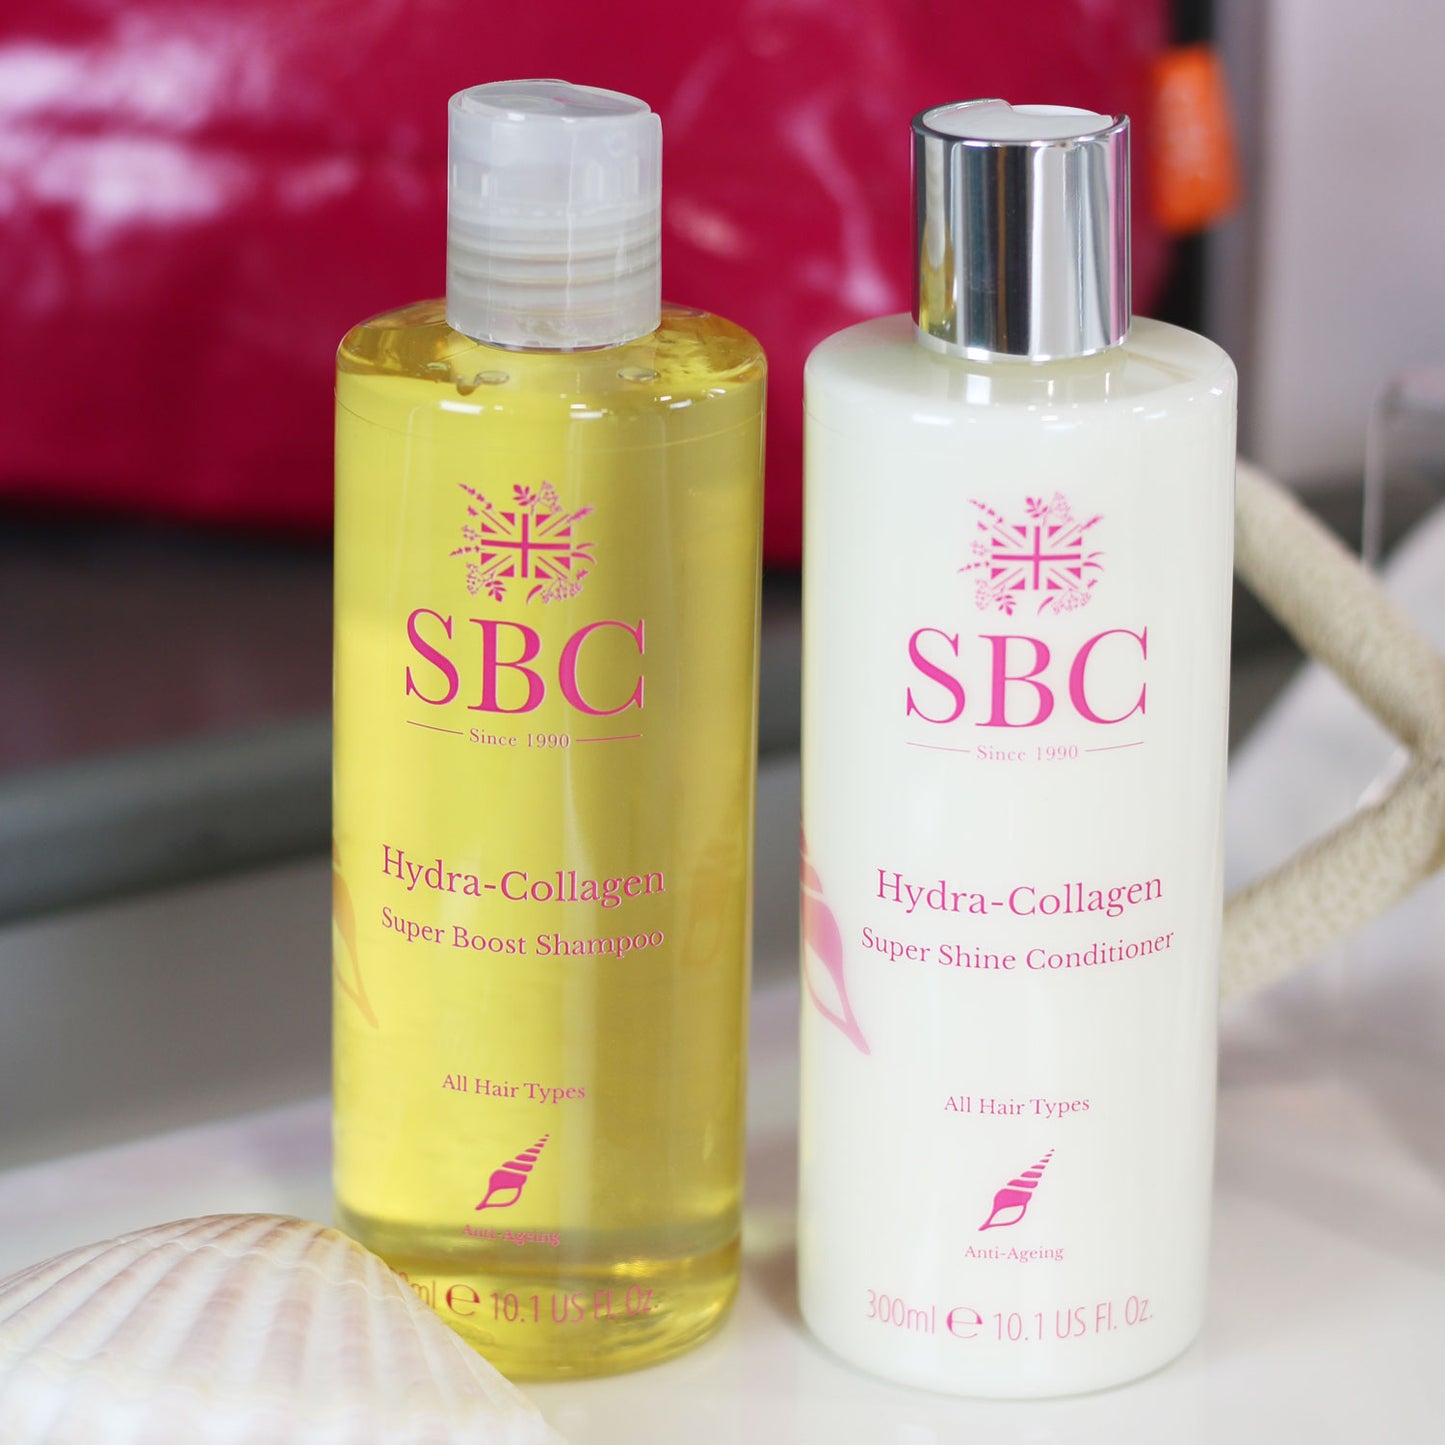 SBC Skincare Hydra-Collagen Super Boost Shampoo and Conditioner